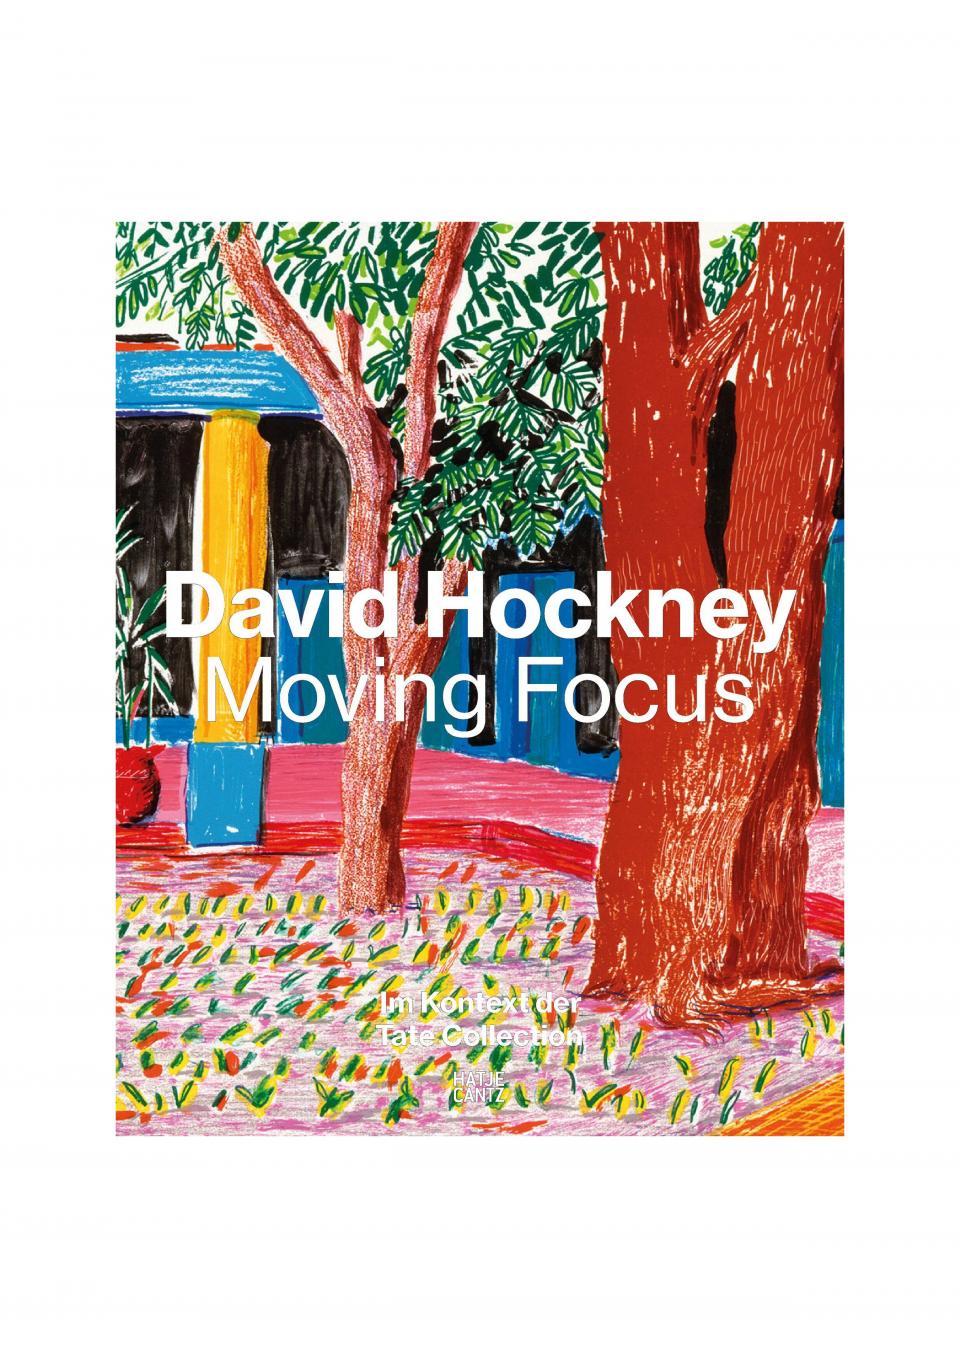 David Hockney "Moving Focus"